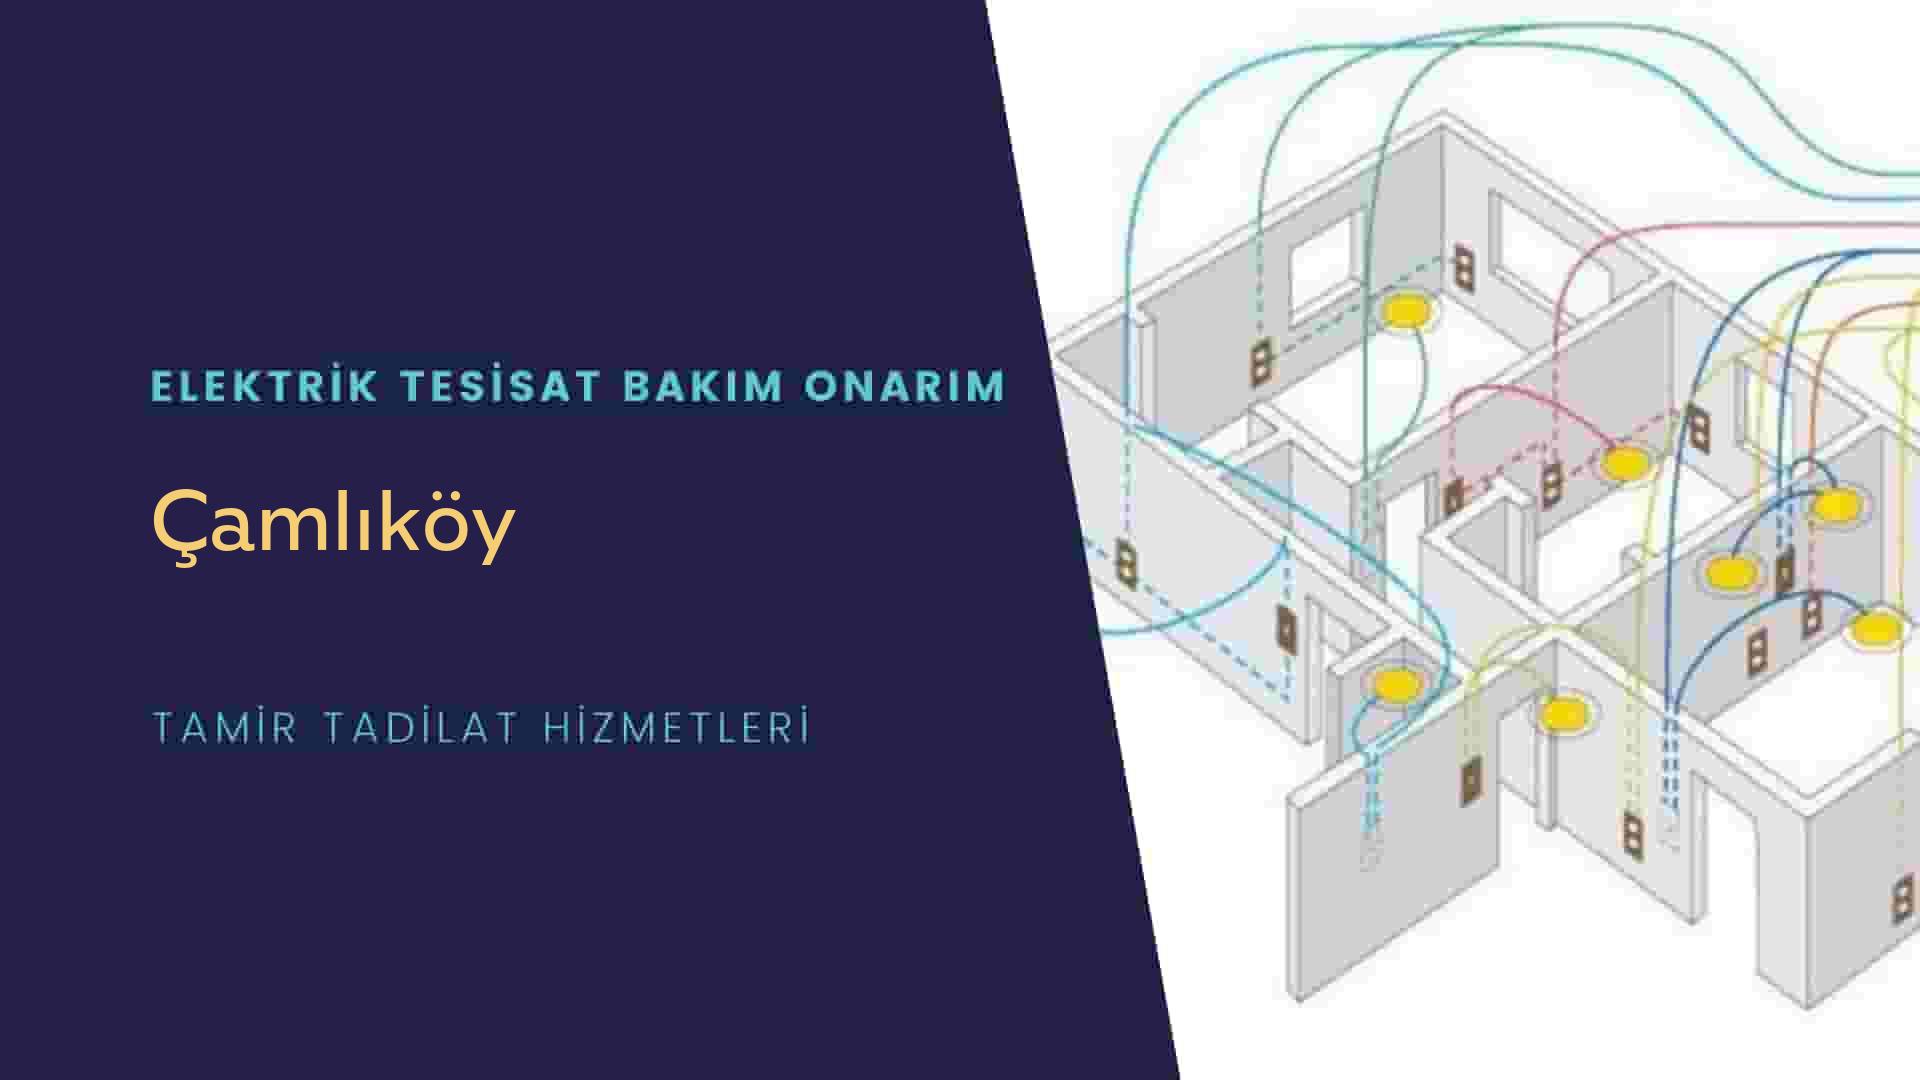 Çamlıköy'de elektrik tesisatı ustalarımı arıyorsunuz doğru adrestenizi Çamlıköy elektrik tesisatı ustalarımız 7/24 sizlere hizmet vermekten mutluluk duyar.